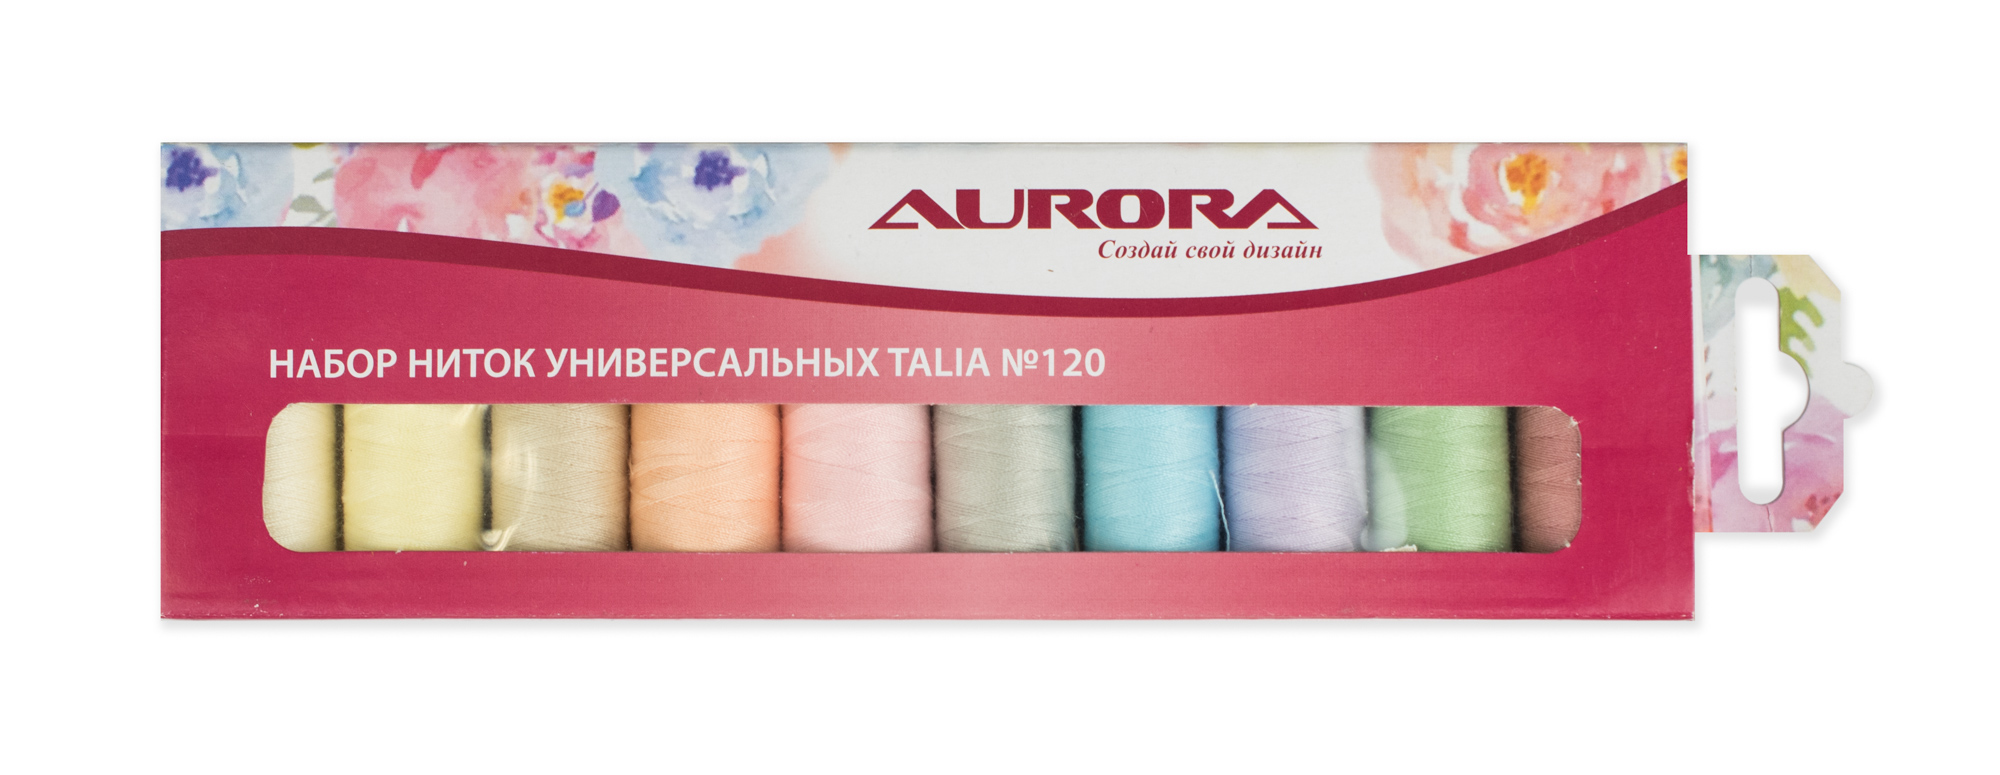 Набор ниток универсальных Talia №120 AU-1204 Aurora оптом